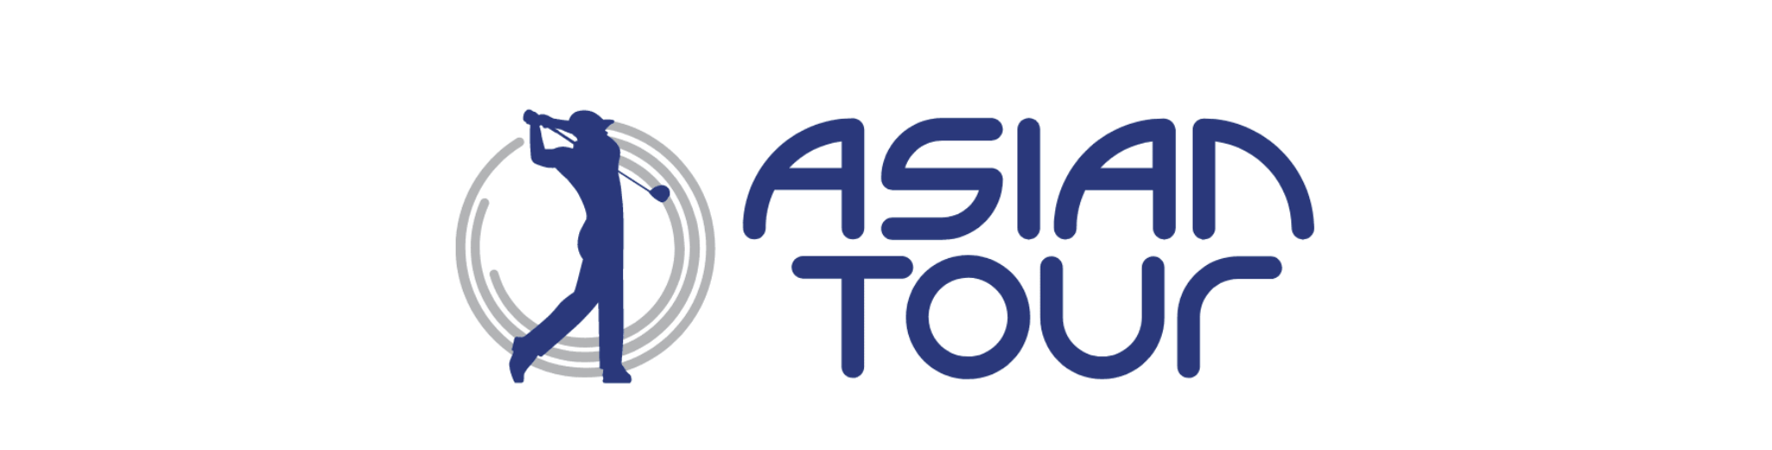 Cision_Asian Tour Logo.png